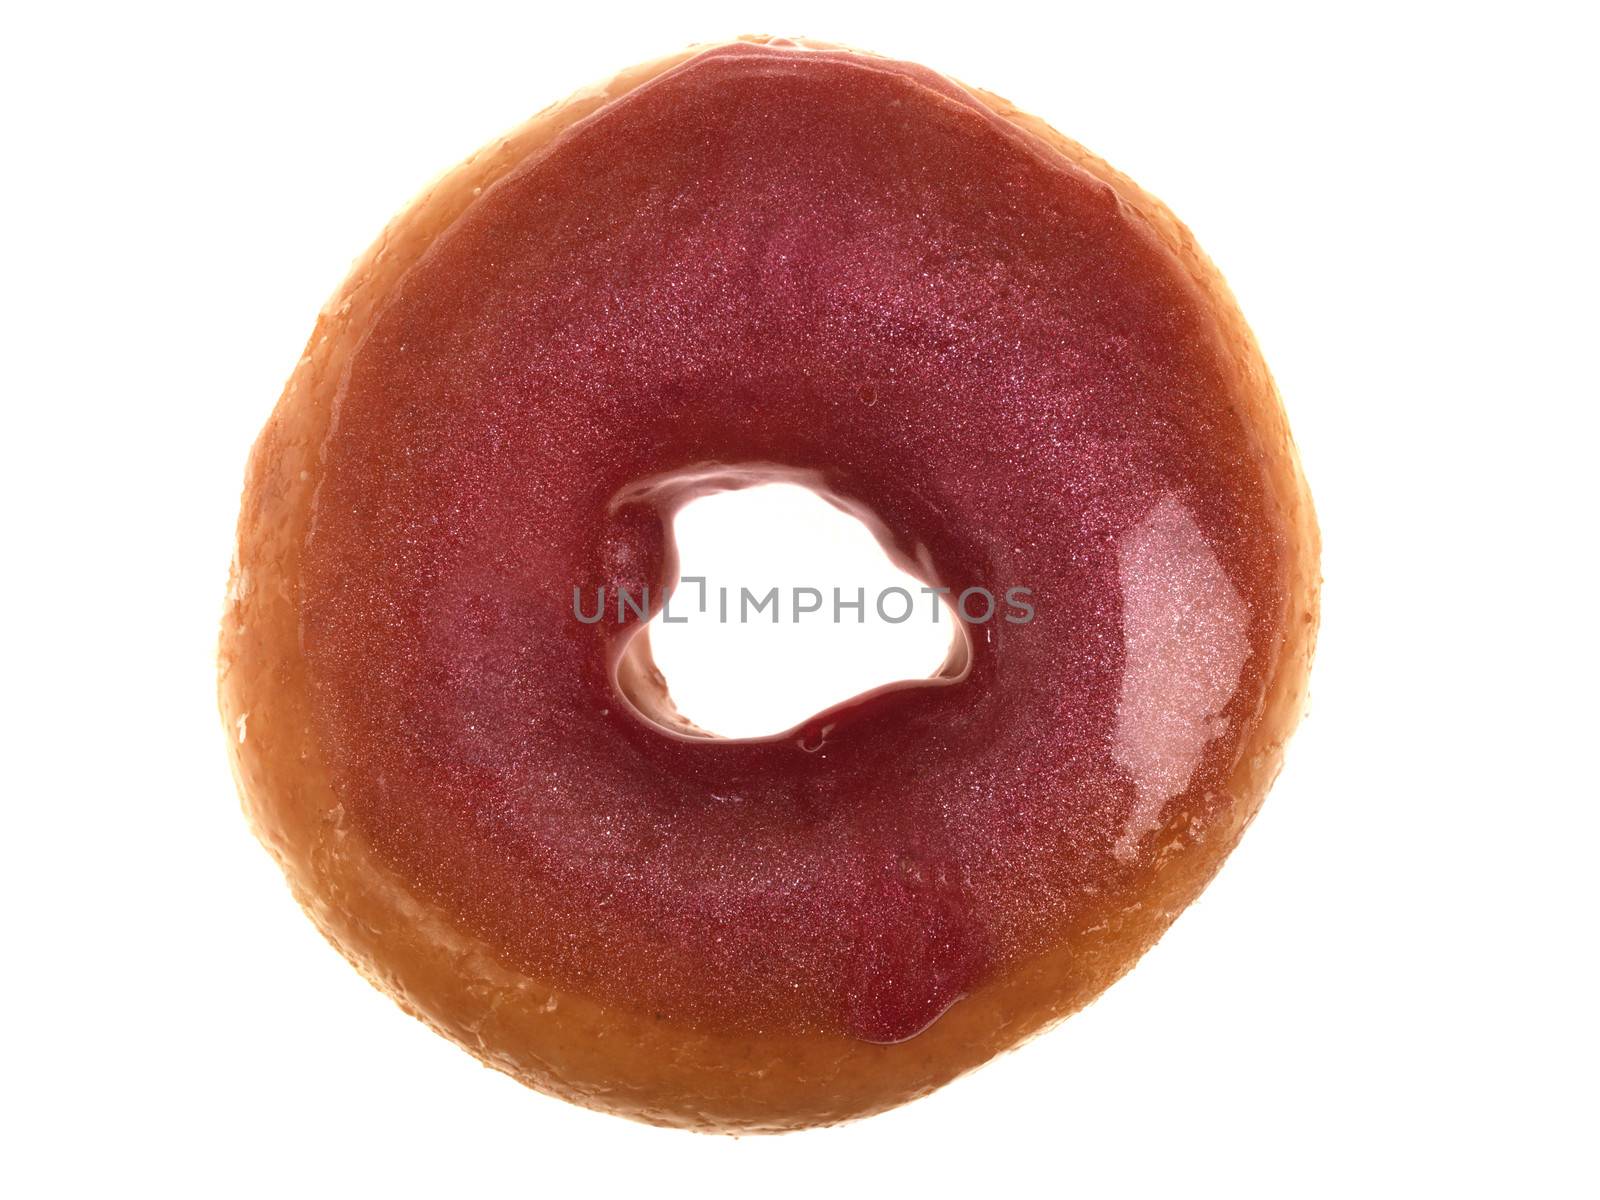 Glazed Ring Donut by Whiteboxmedia